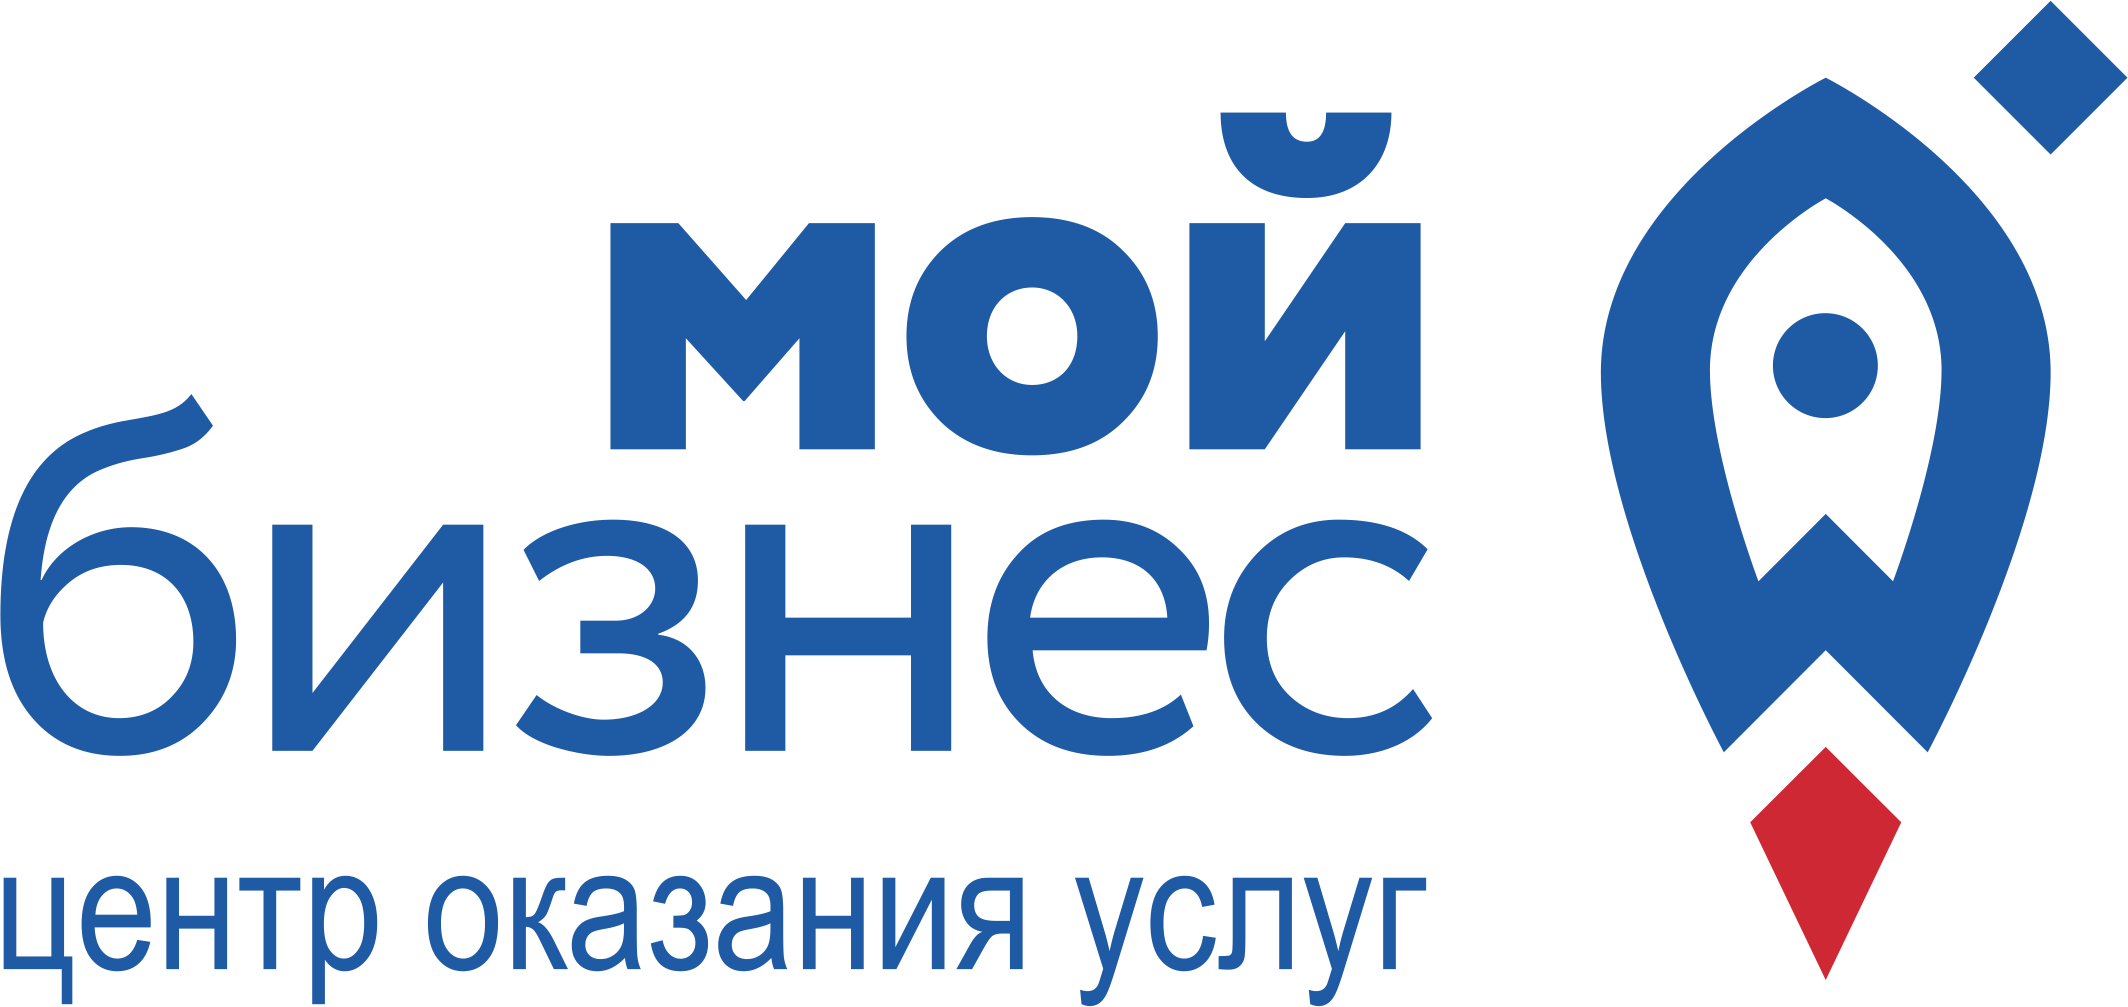 Центр «Мой бизнес» Севастополь